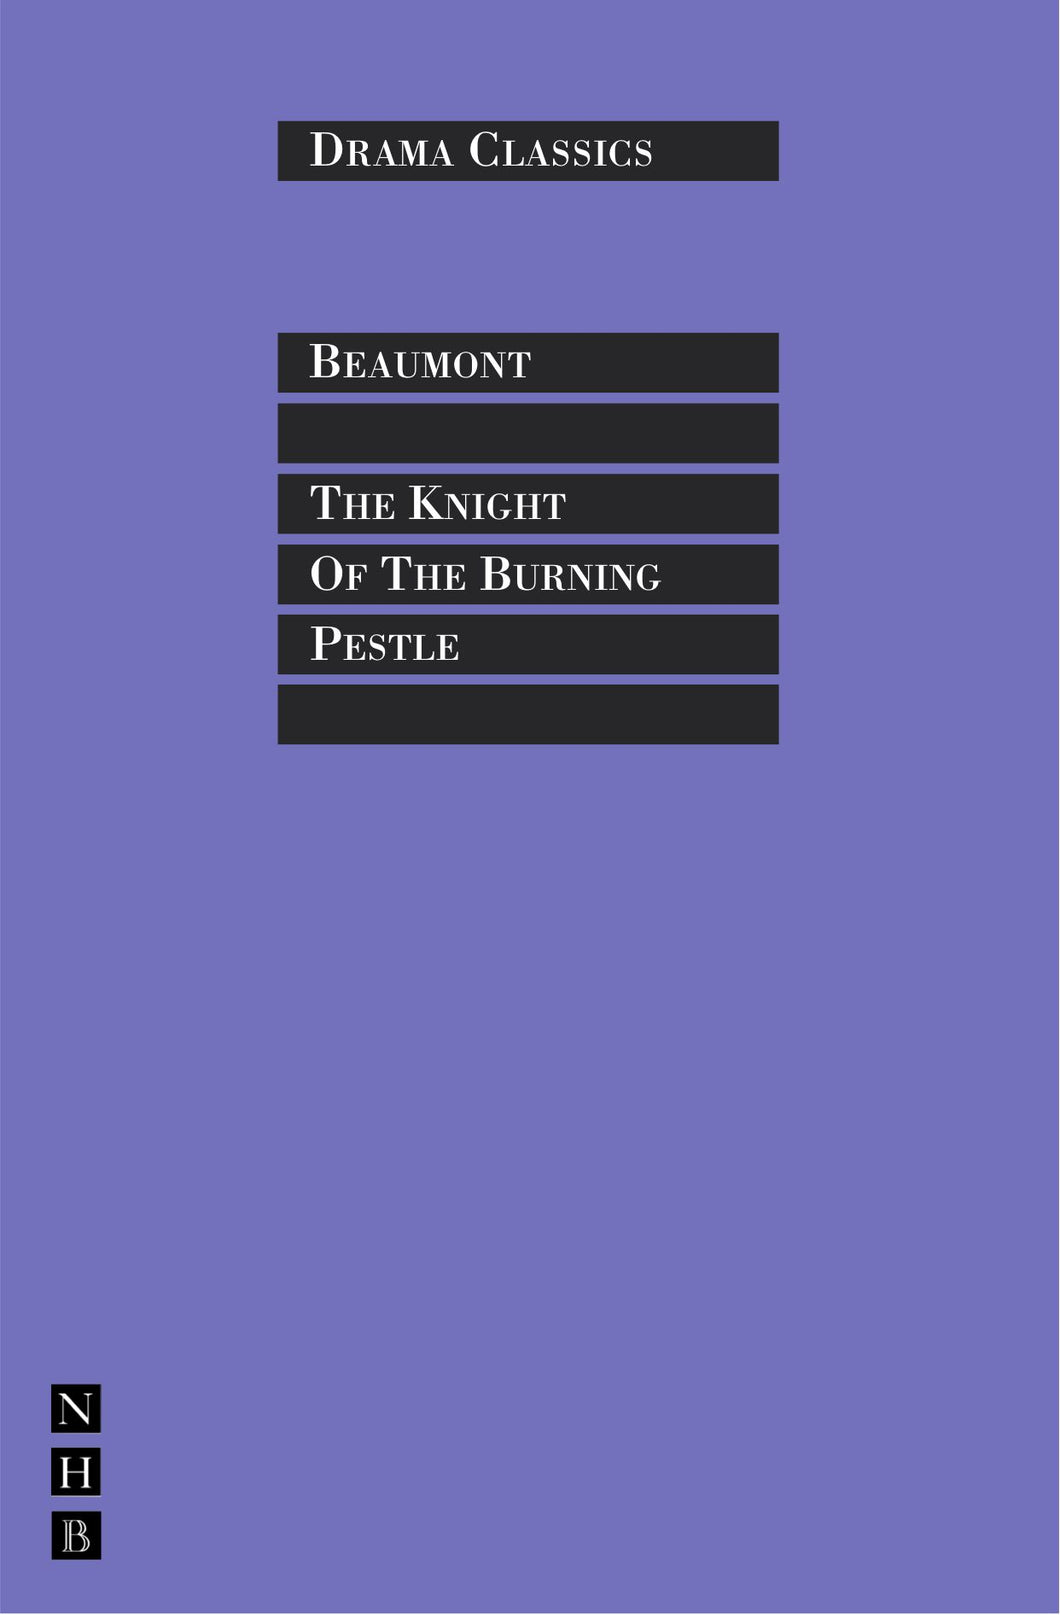 The Knight of the Burning Pestle ร้านหนังสือและสิ่งของ เป็นร้านหนังสือภาษาอังกฤษหายาก และร้านกาแฟ หรือ บุ๊คคาเฟ่ ตั้งอยู่สุขุมวิท กรุงเทพ